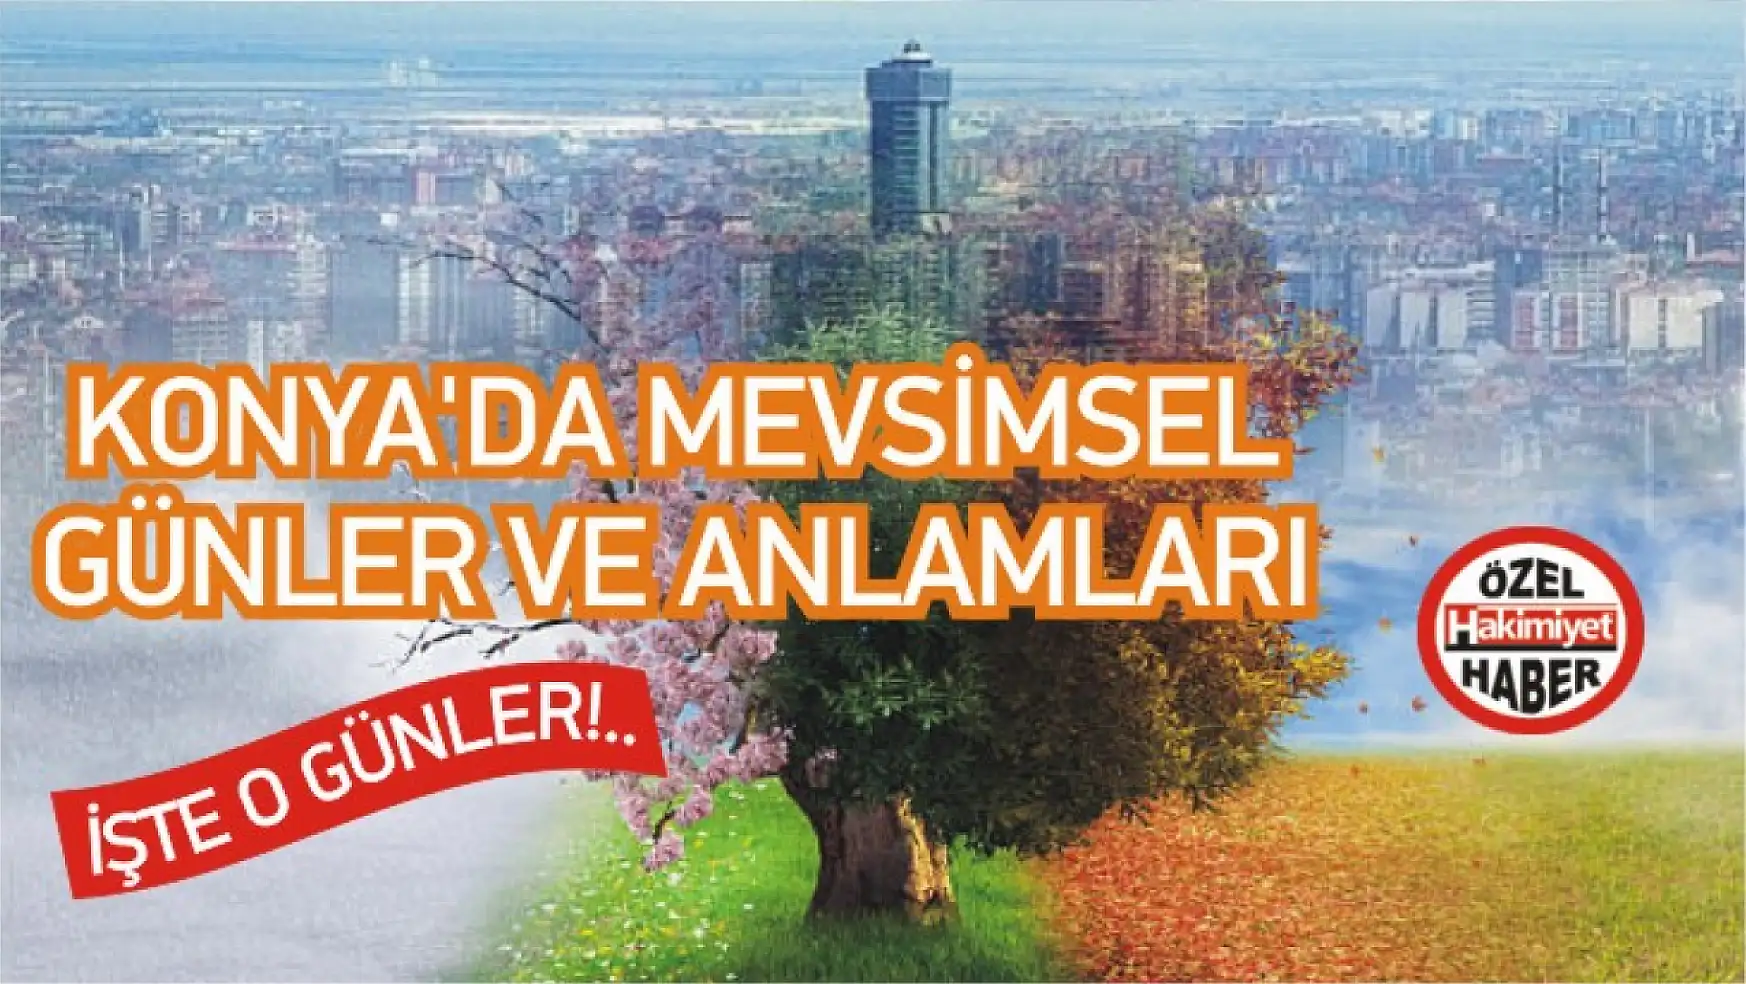 Konya'da mevsimsel günler ve anlamları: İşte o günler!..